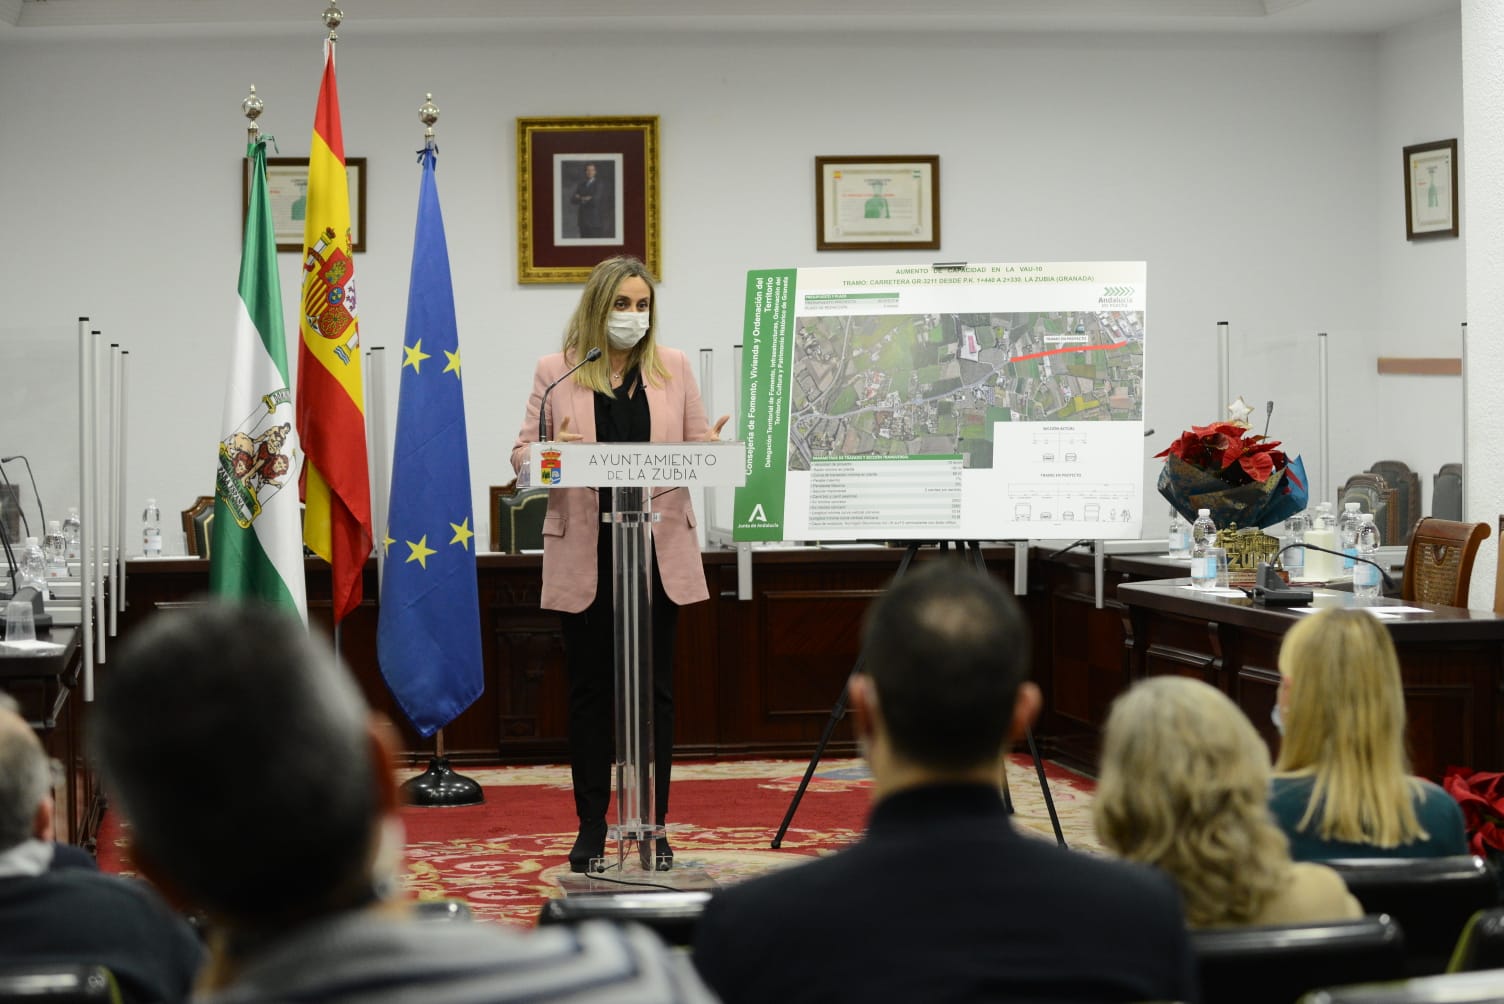 La Junta anuncia la licitación del proyecto de desdoble de la carretera de la Zubia